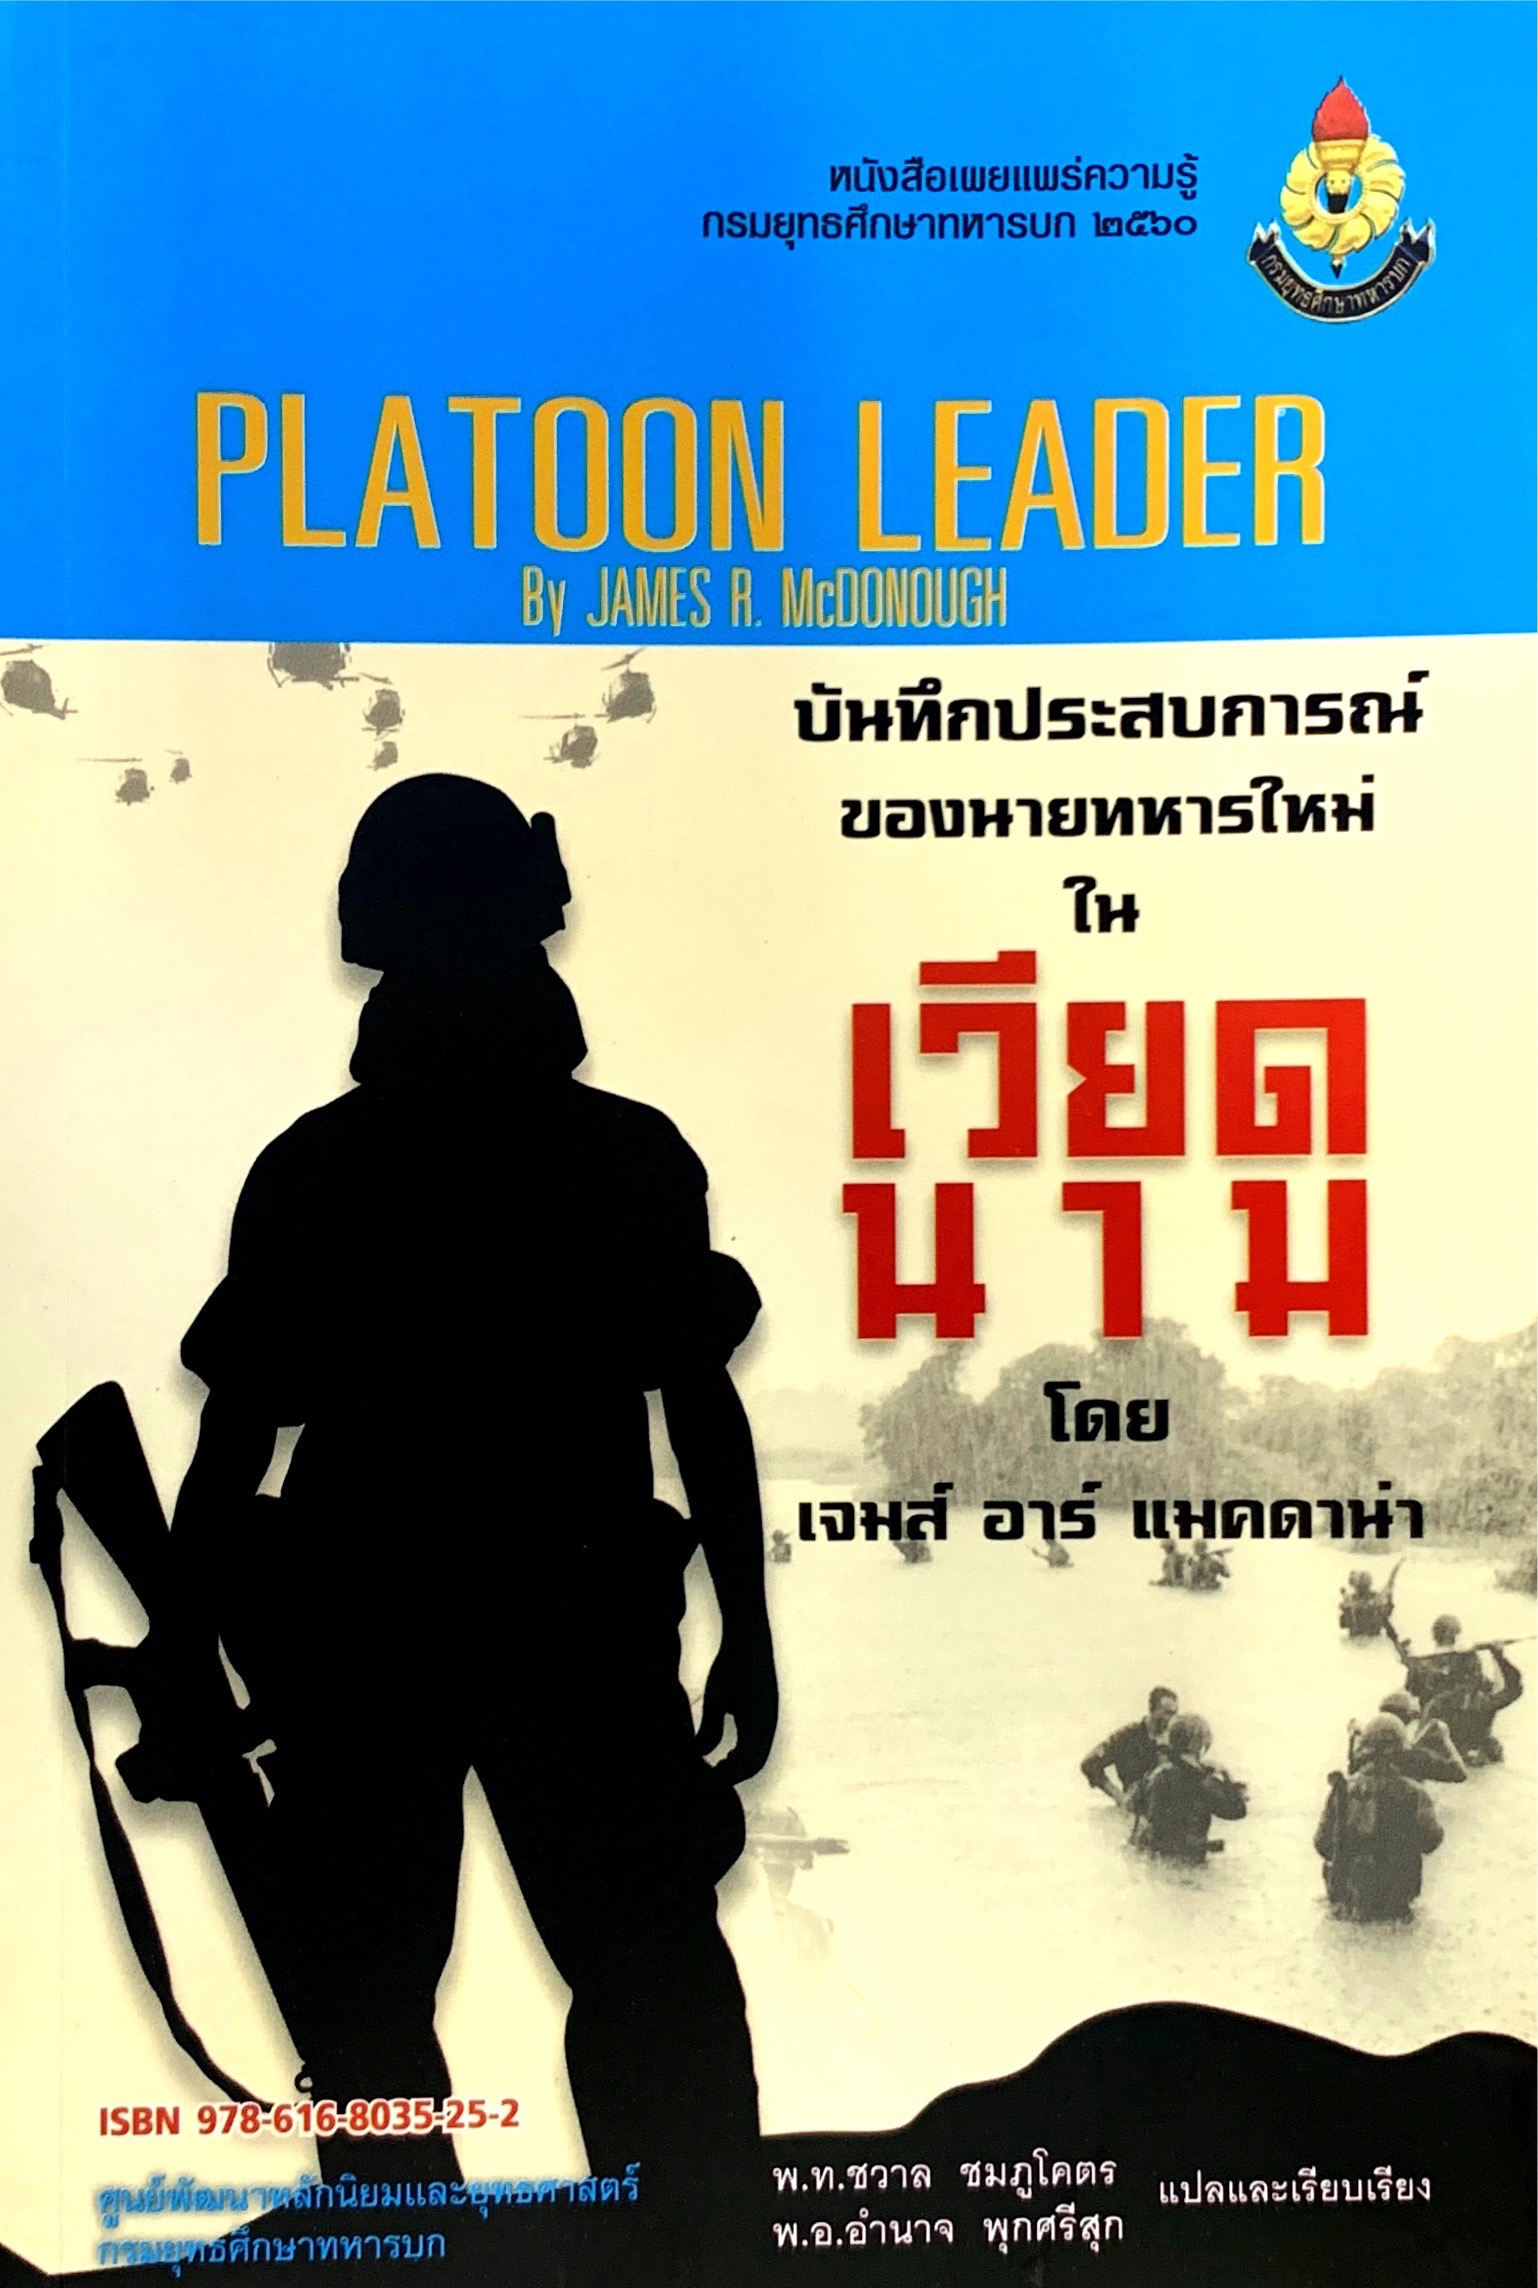 					View 2560: บันทึกประสบการณ์ของนายทหารใหม่ในเวียดนาม (PLATOON LEADER)
				